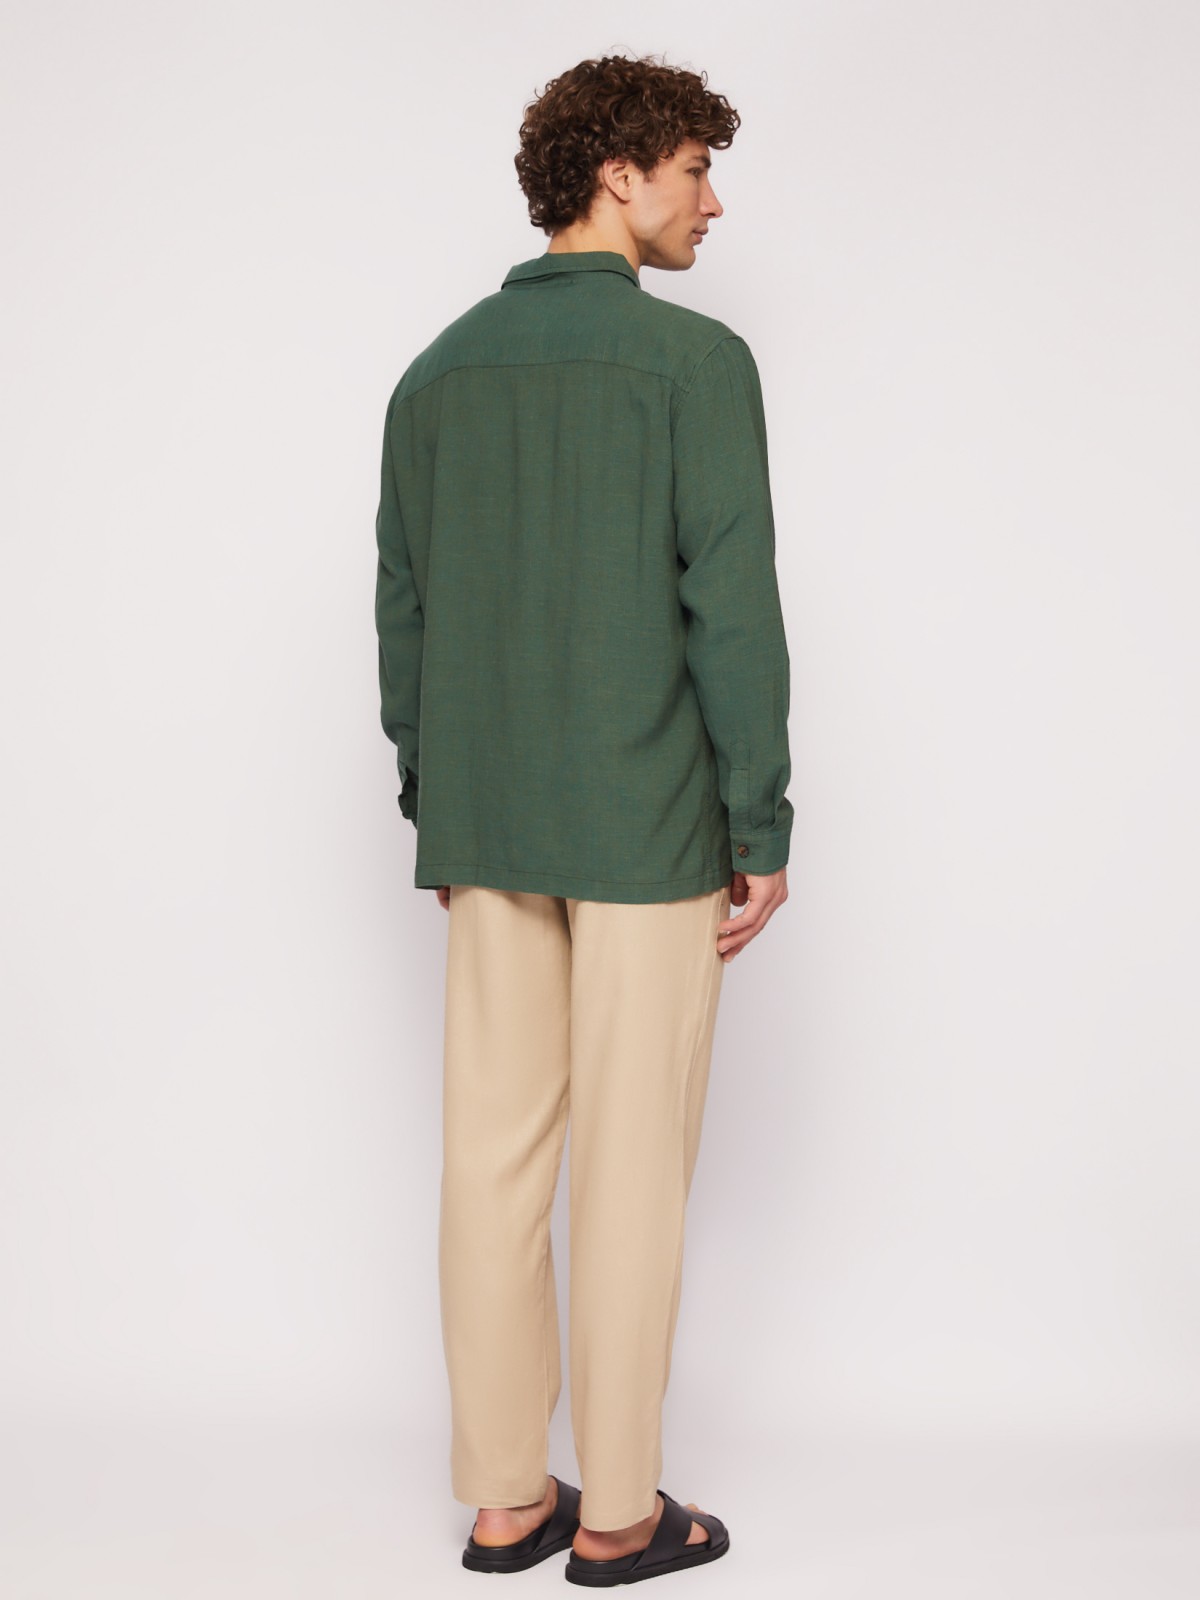 Куртка-рубашка из льна и вискозы zolla 01421214R073, цвет темно-зеленый, размер L - фото 6